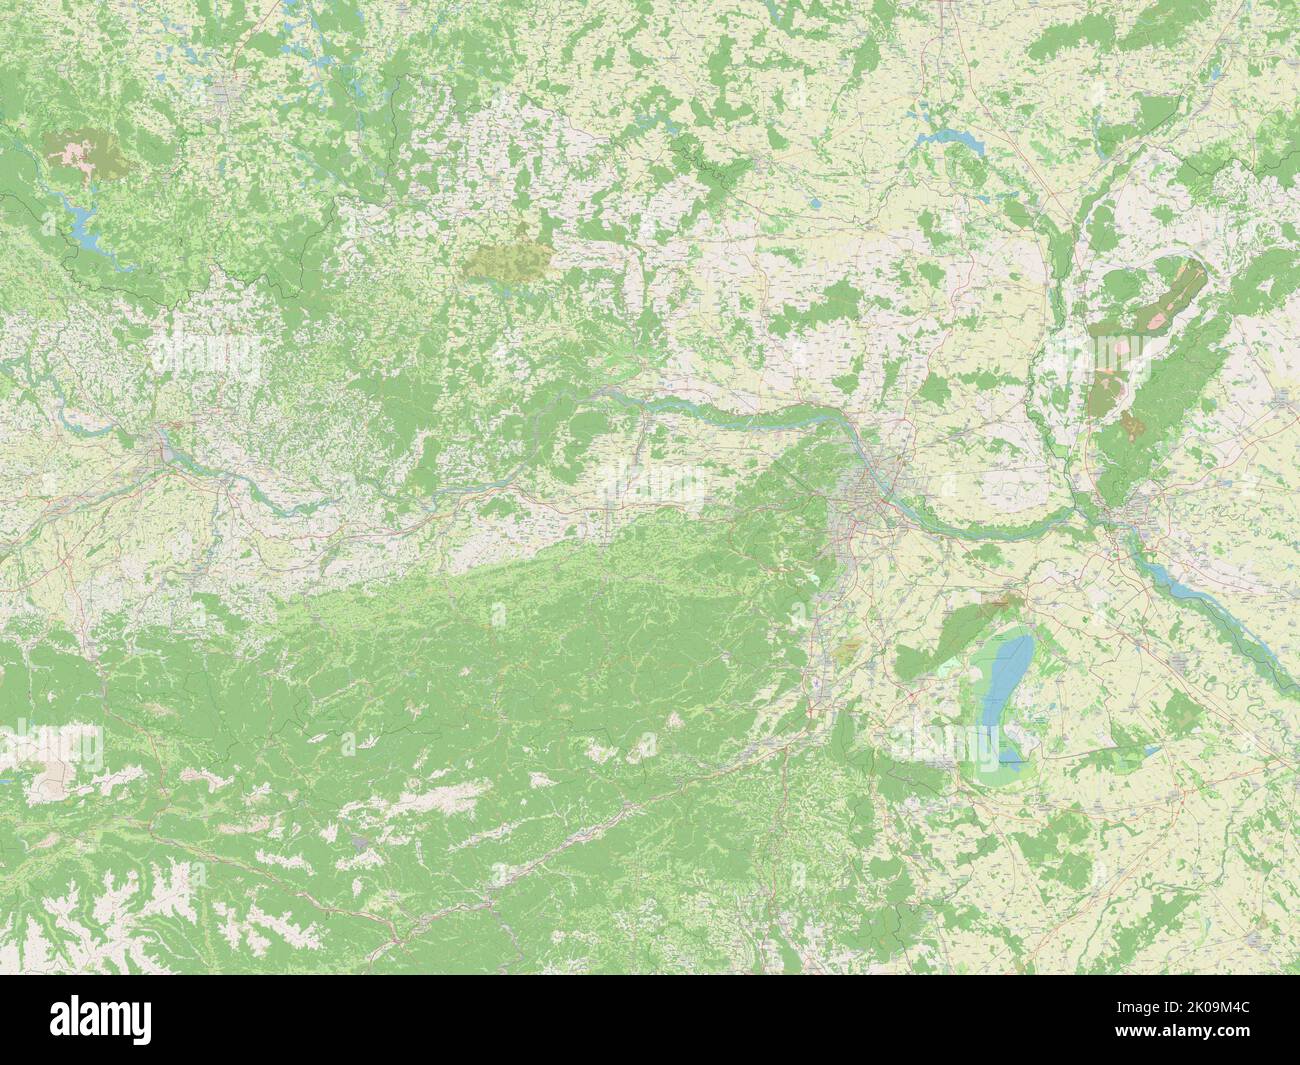 Niederosterreich, state of Austria. Open Street Map Stock Photo